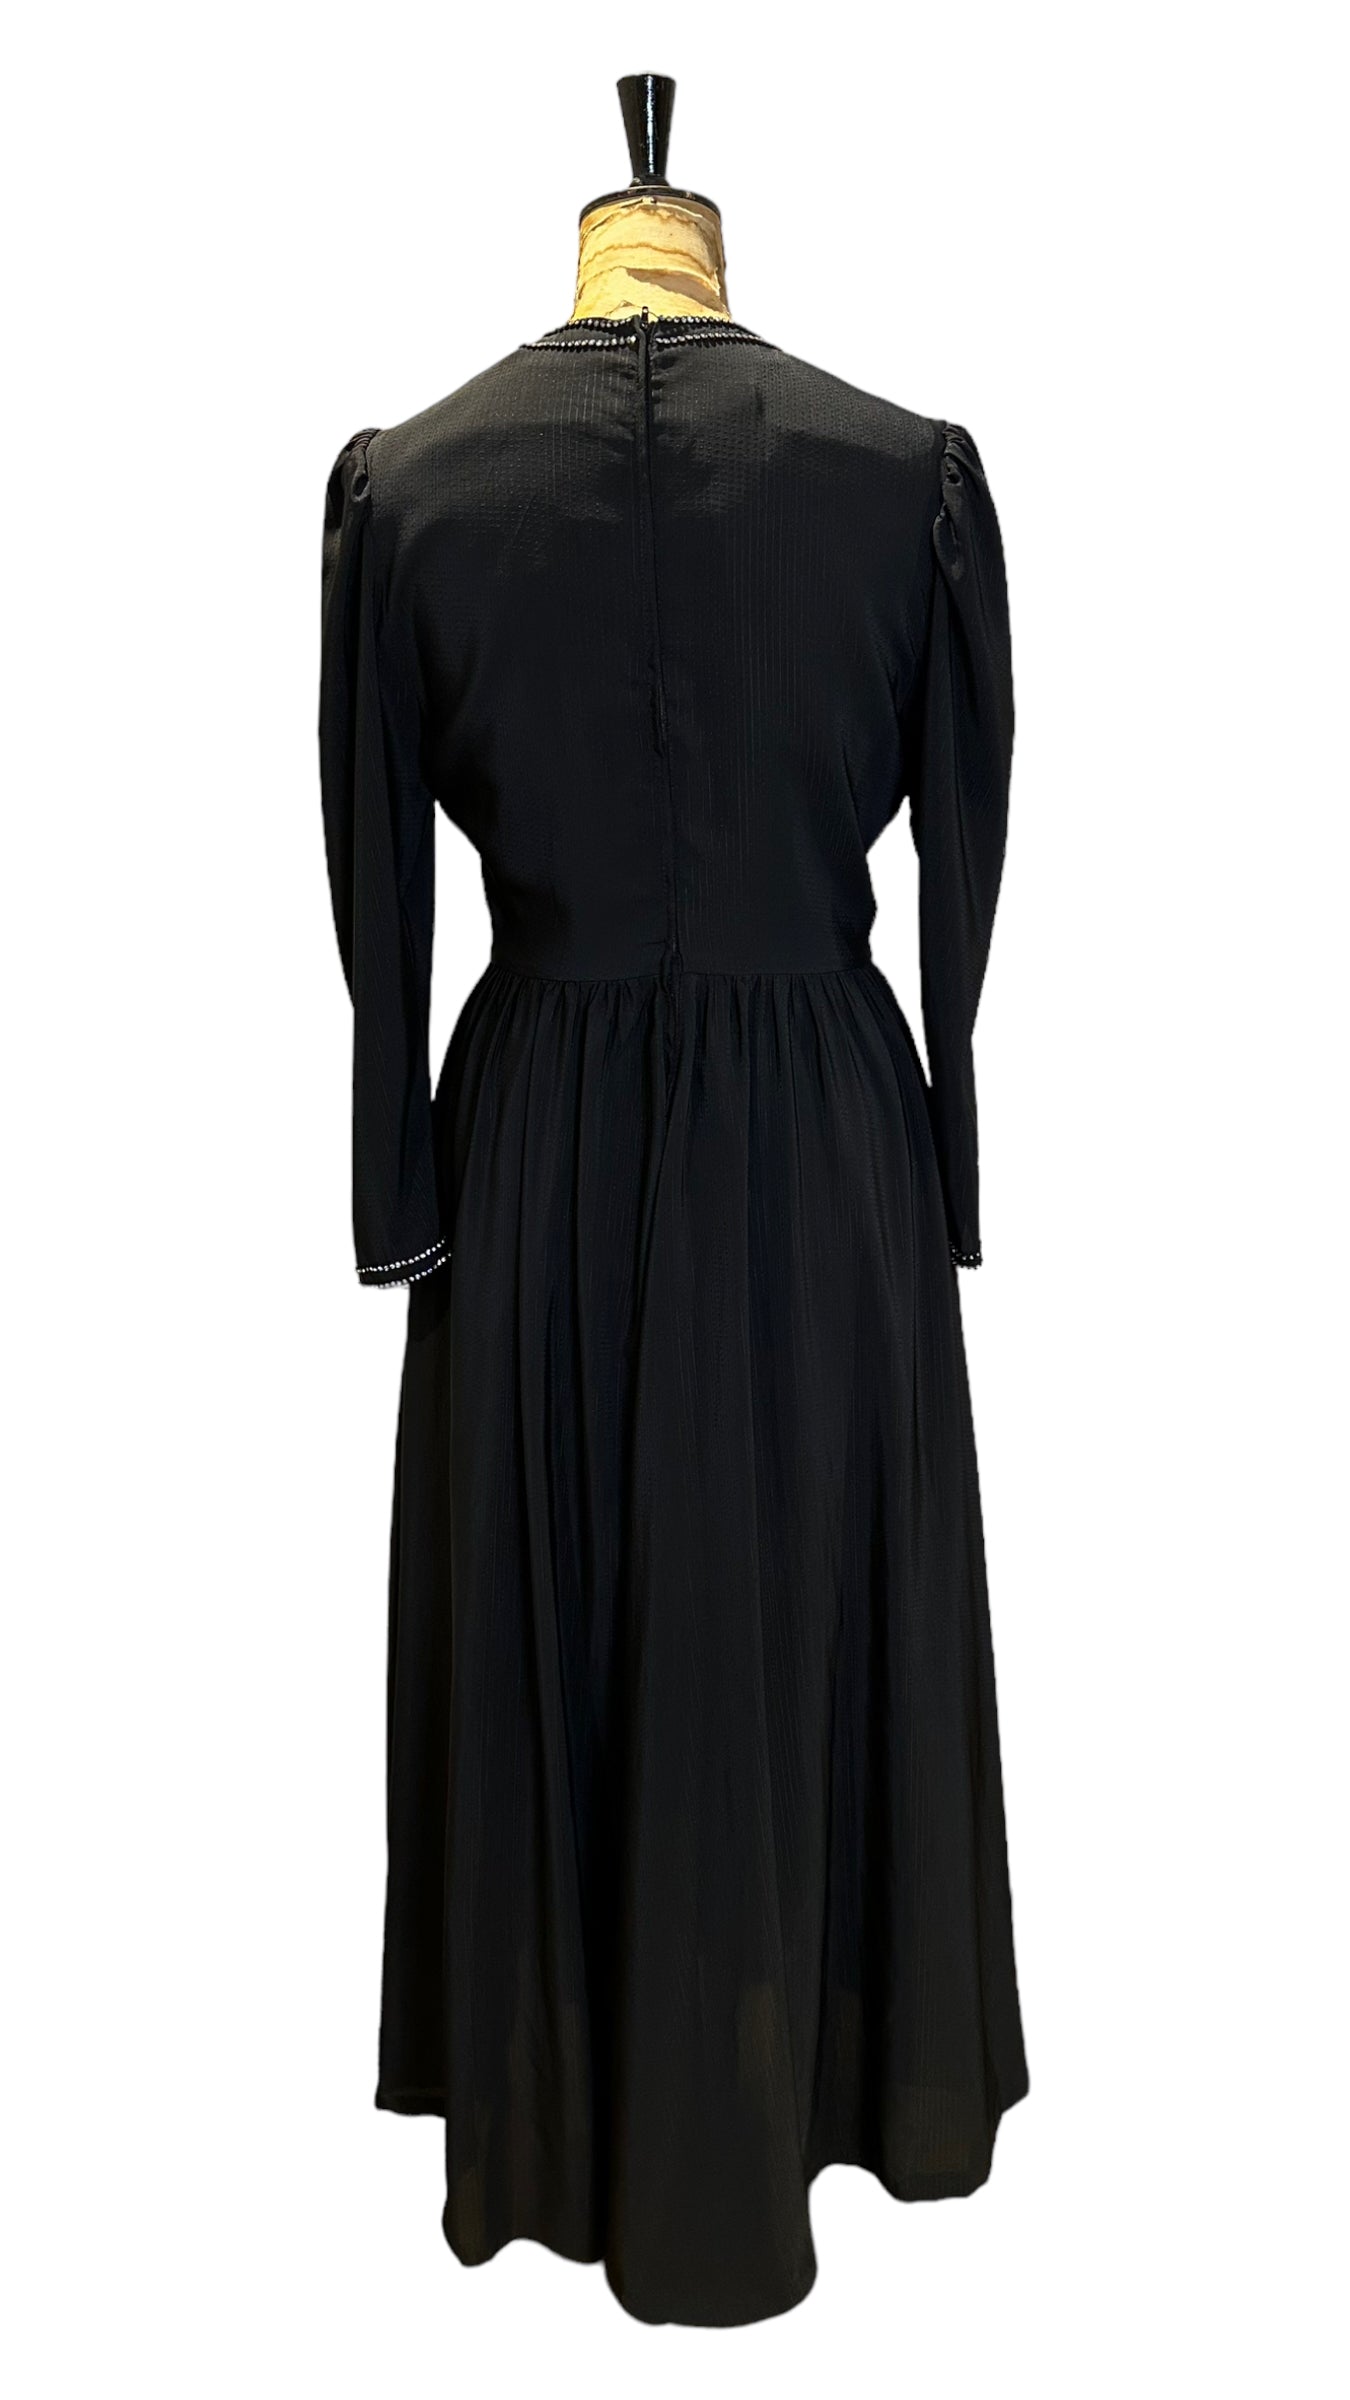 60s Vintage Black Evening Dress with Diamanté Embellishment  Size UK 12